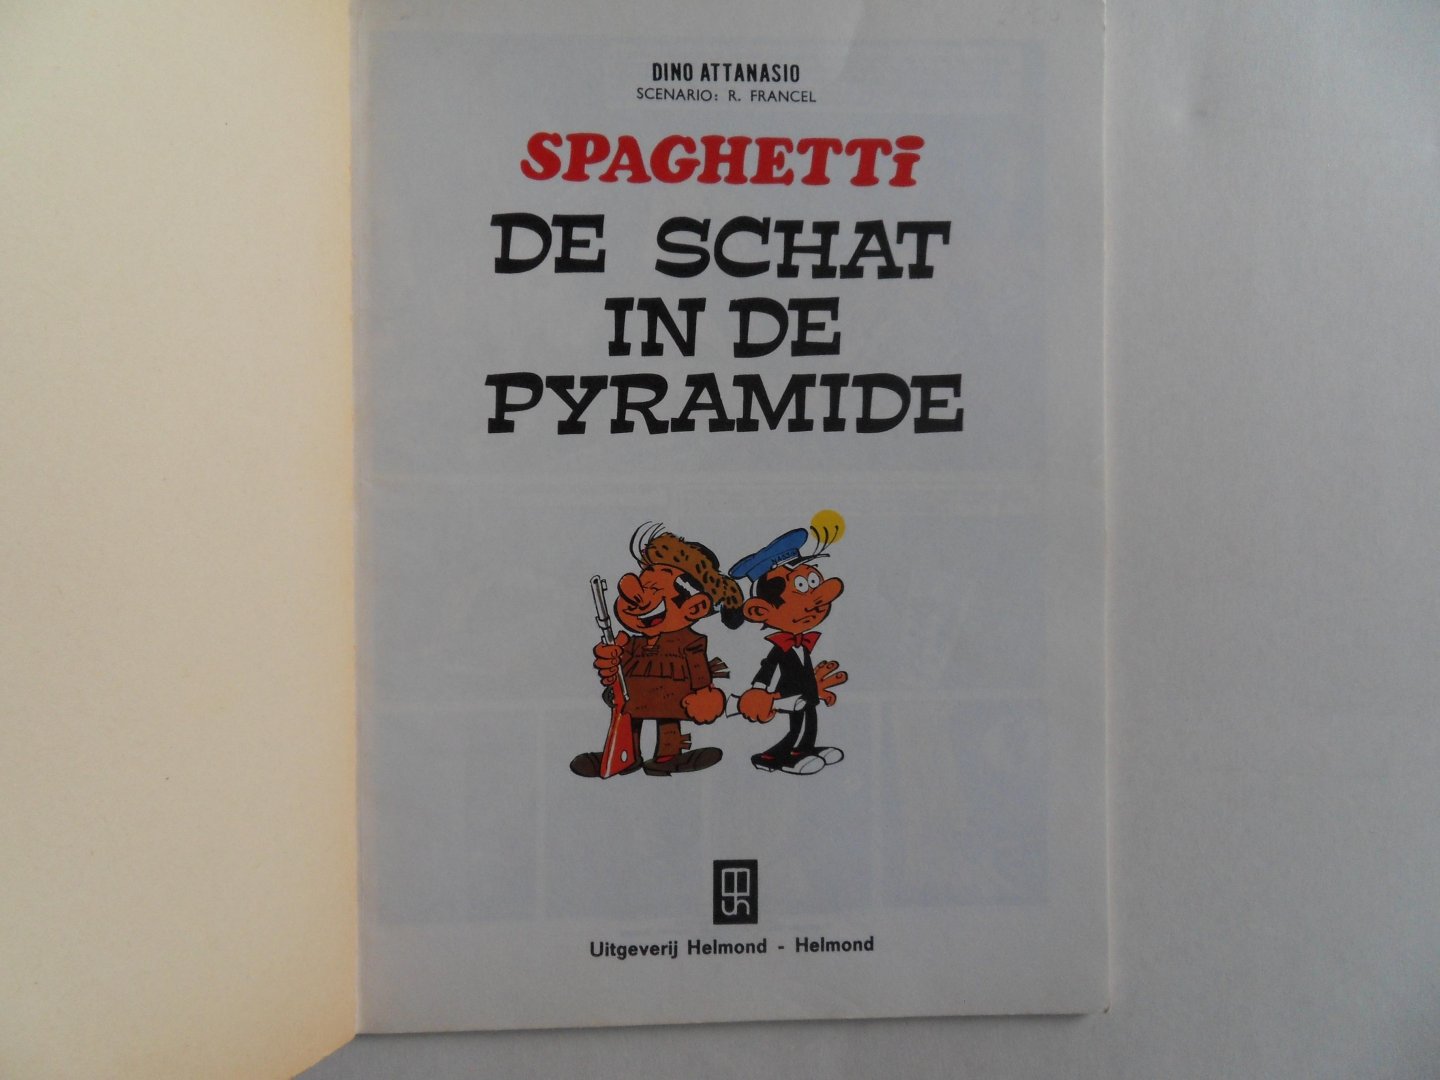 Attanasio, Dino (tekeningen); Francel, R. (scenario). - De Schat in de Pyramide.